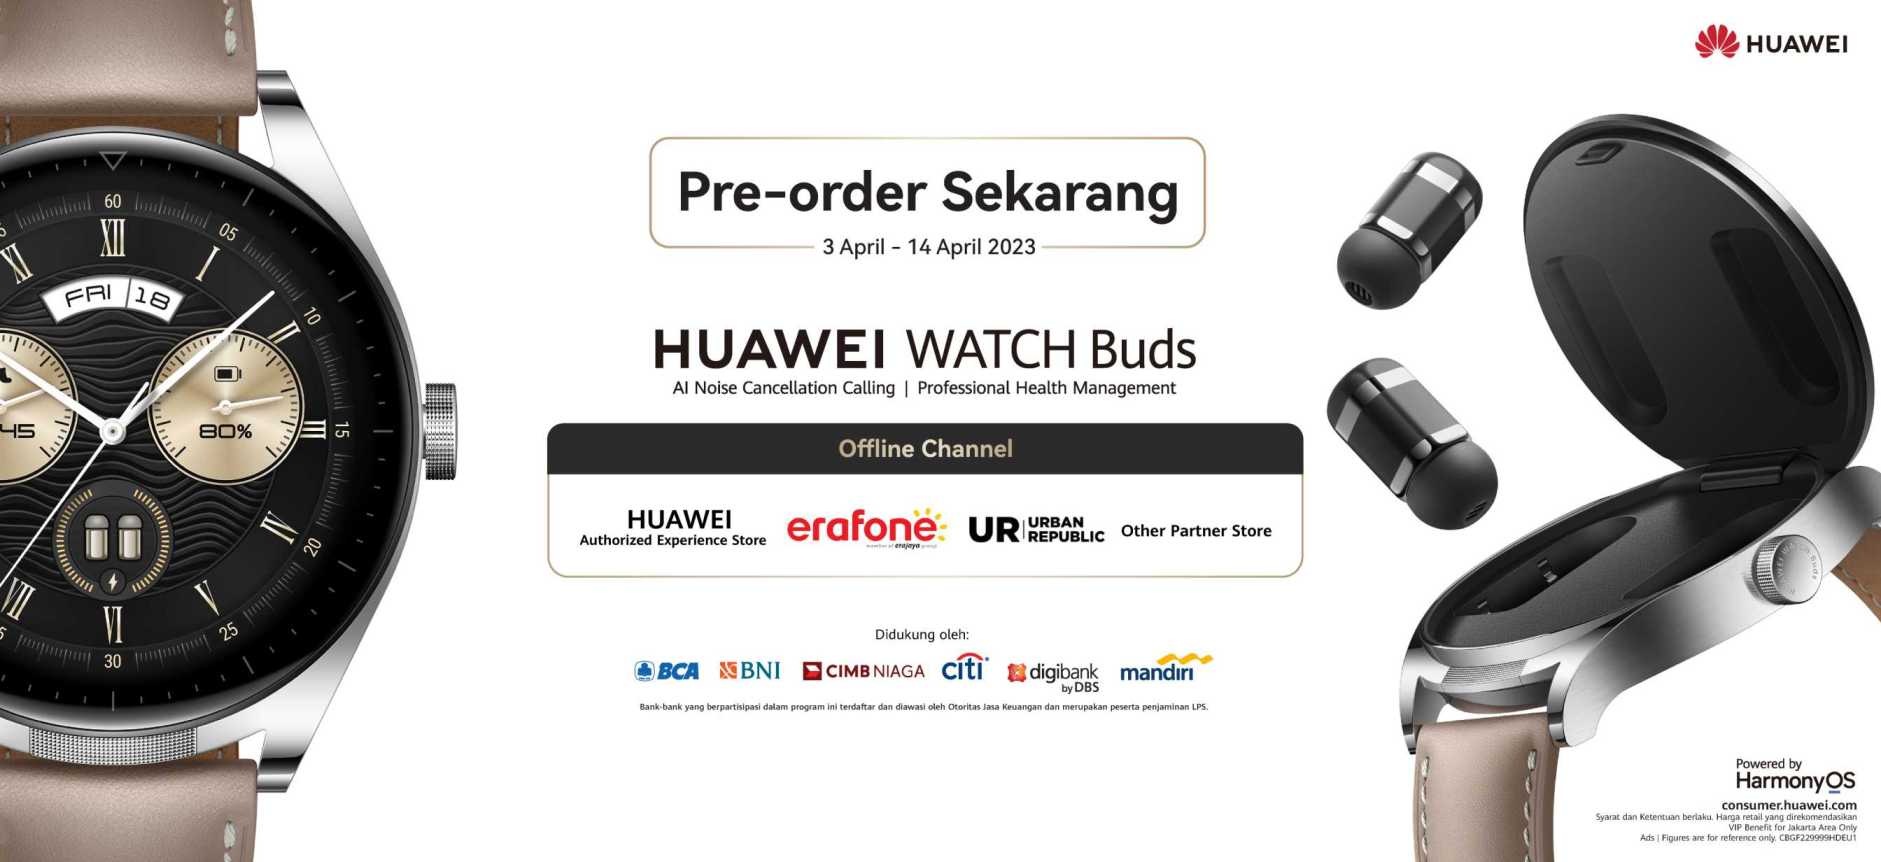 Huawei, HUAWEI WATCH Buds, TWS, Smartwatch, Canggih, Mudah, Praktis